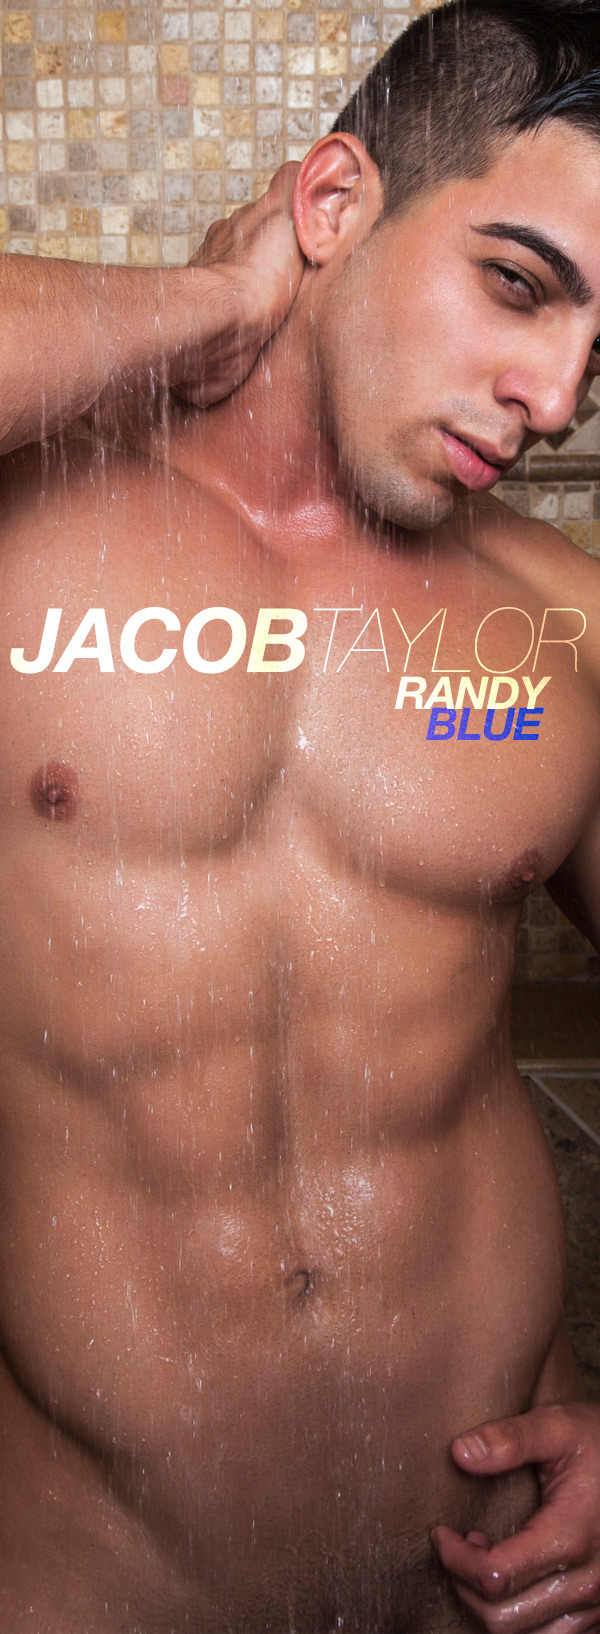 Jacob Taylor (Shoots A Geyser of Cum) at RandyBlue